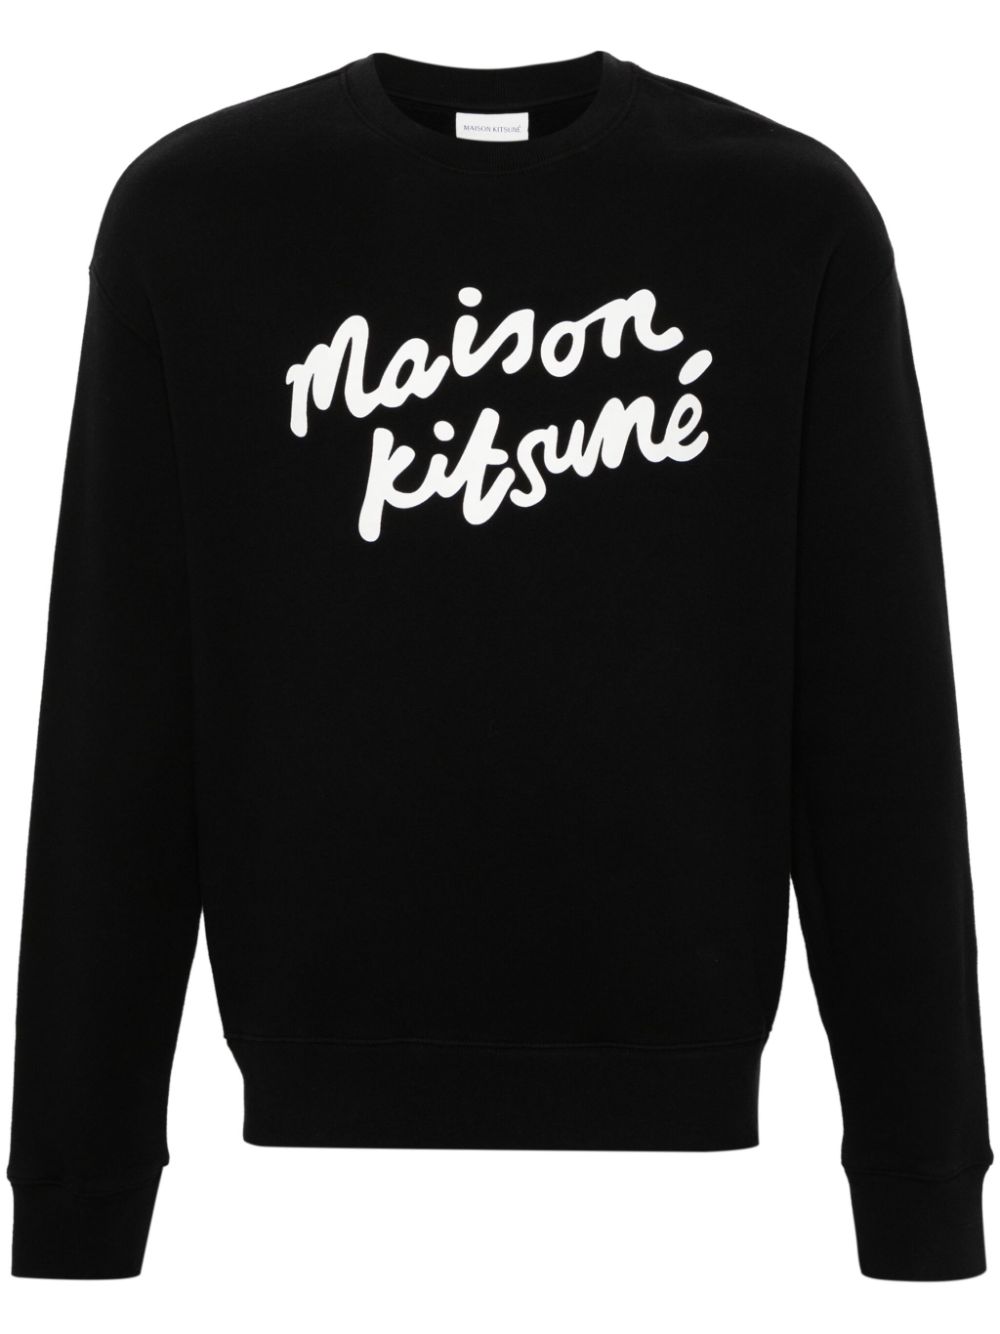 Maison Kisuné - Sweat black Handwriting Comfort - Lothaire